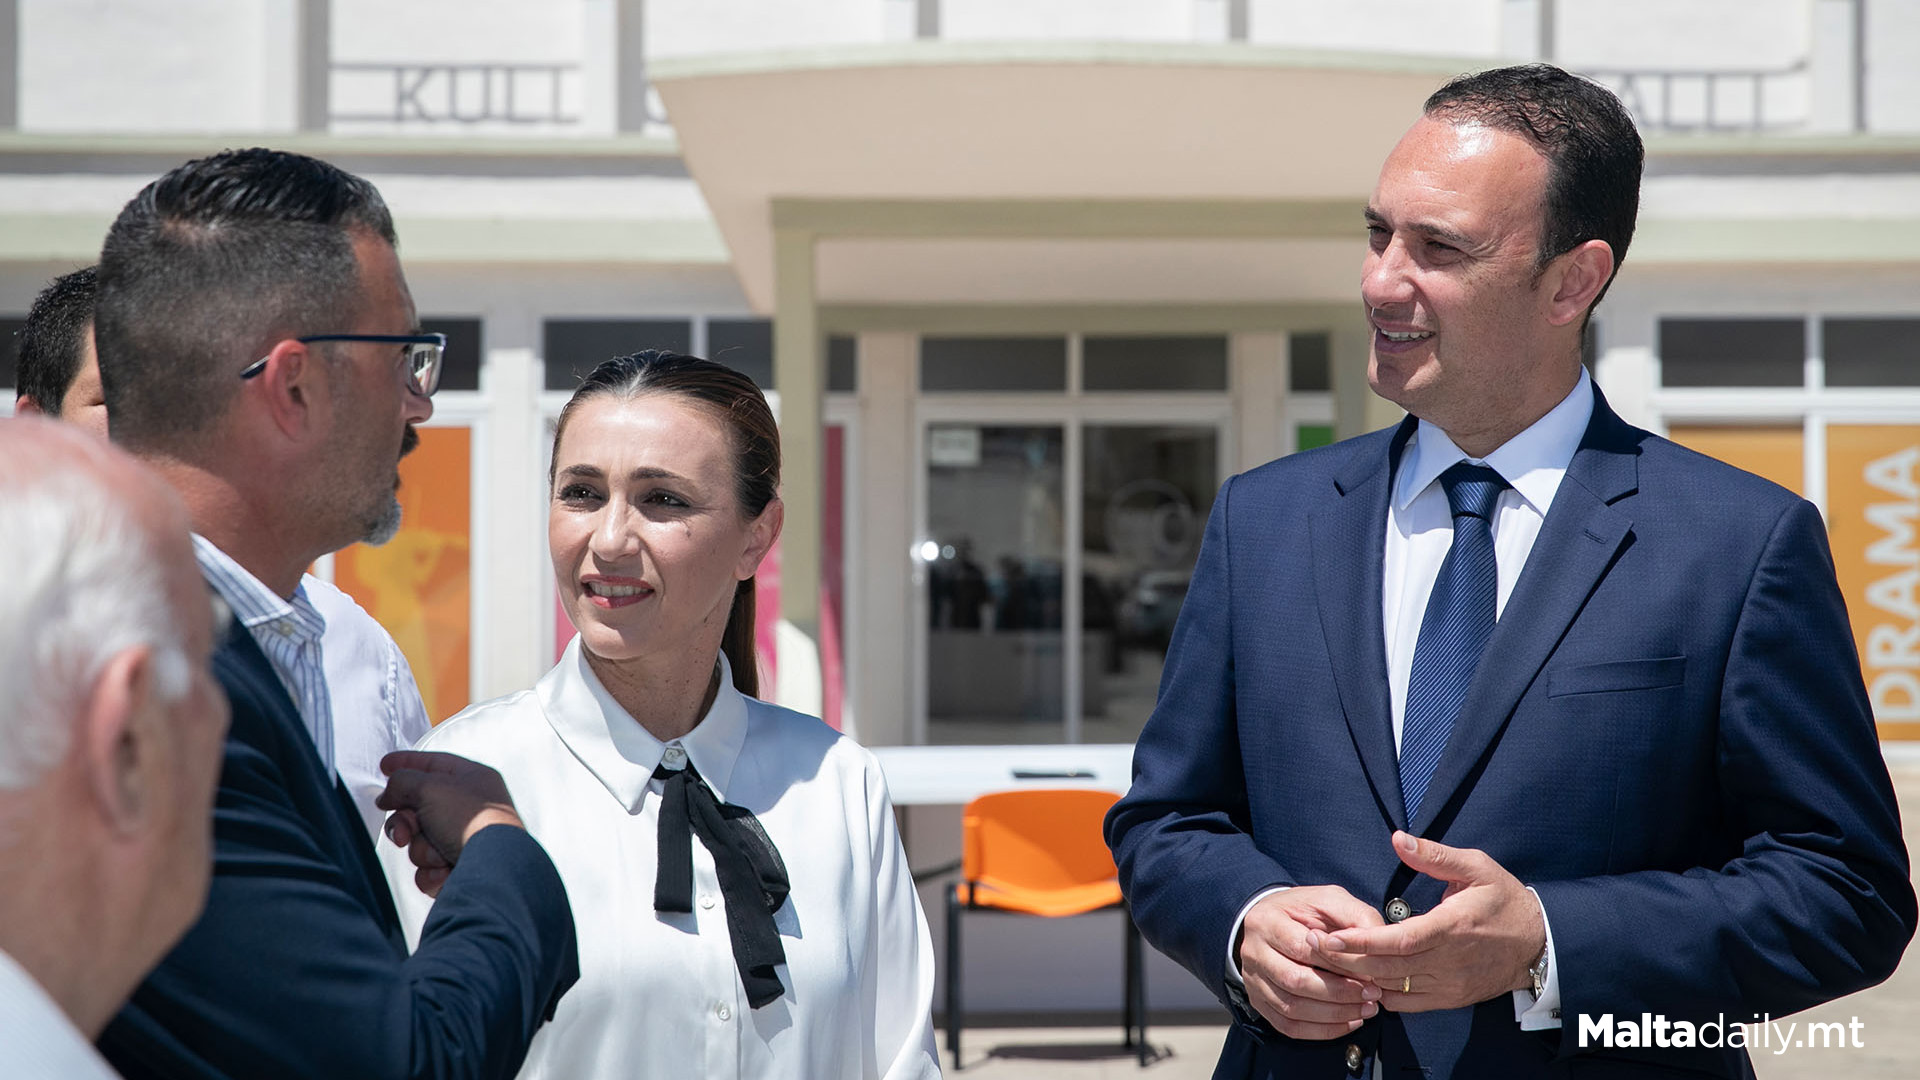 2 Ħamrun School Parkings To Be Open For Community